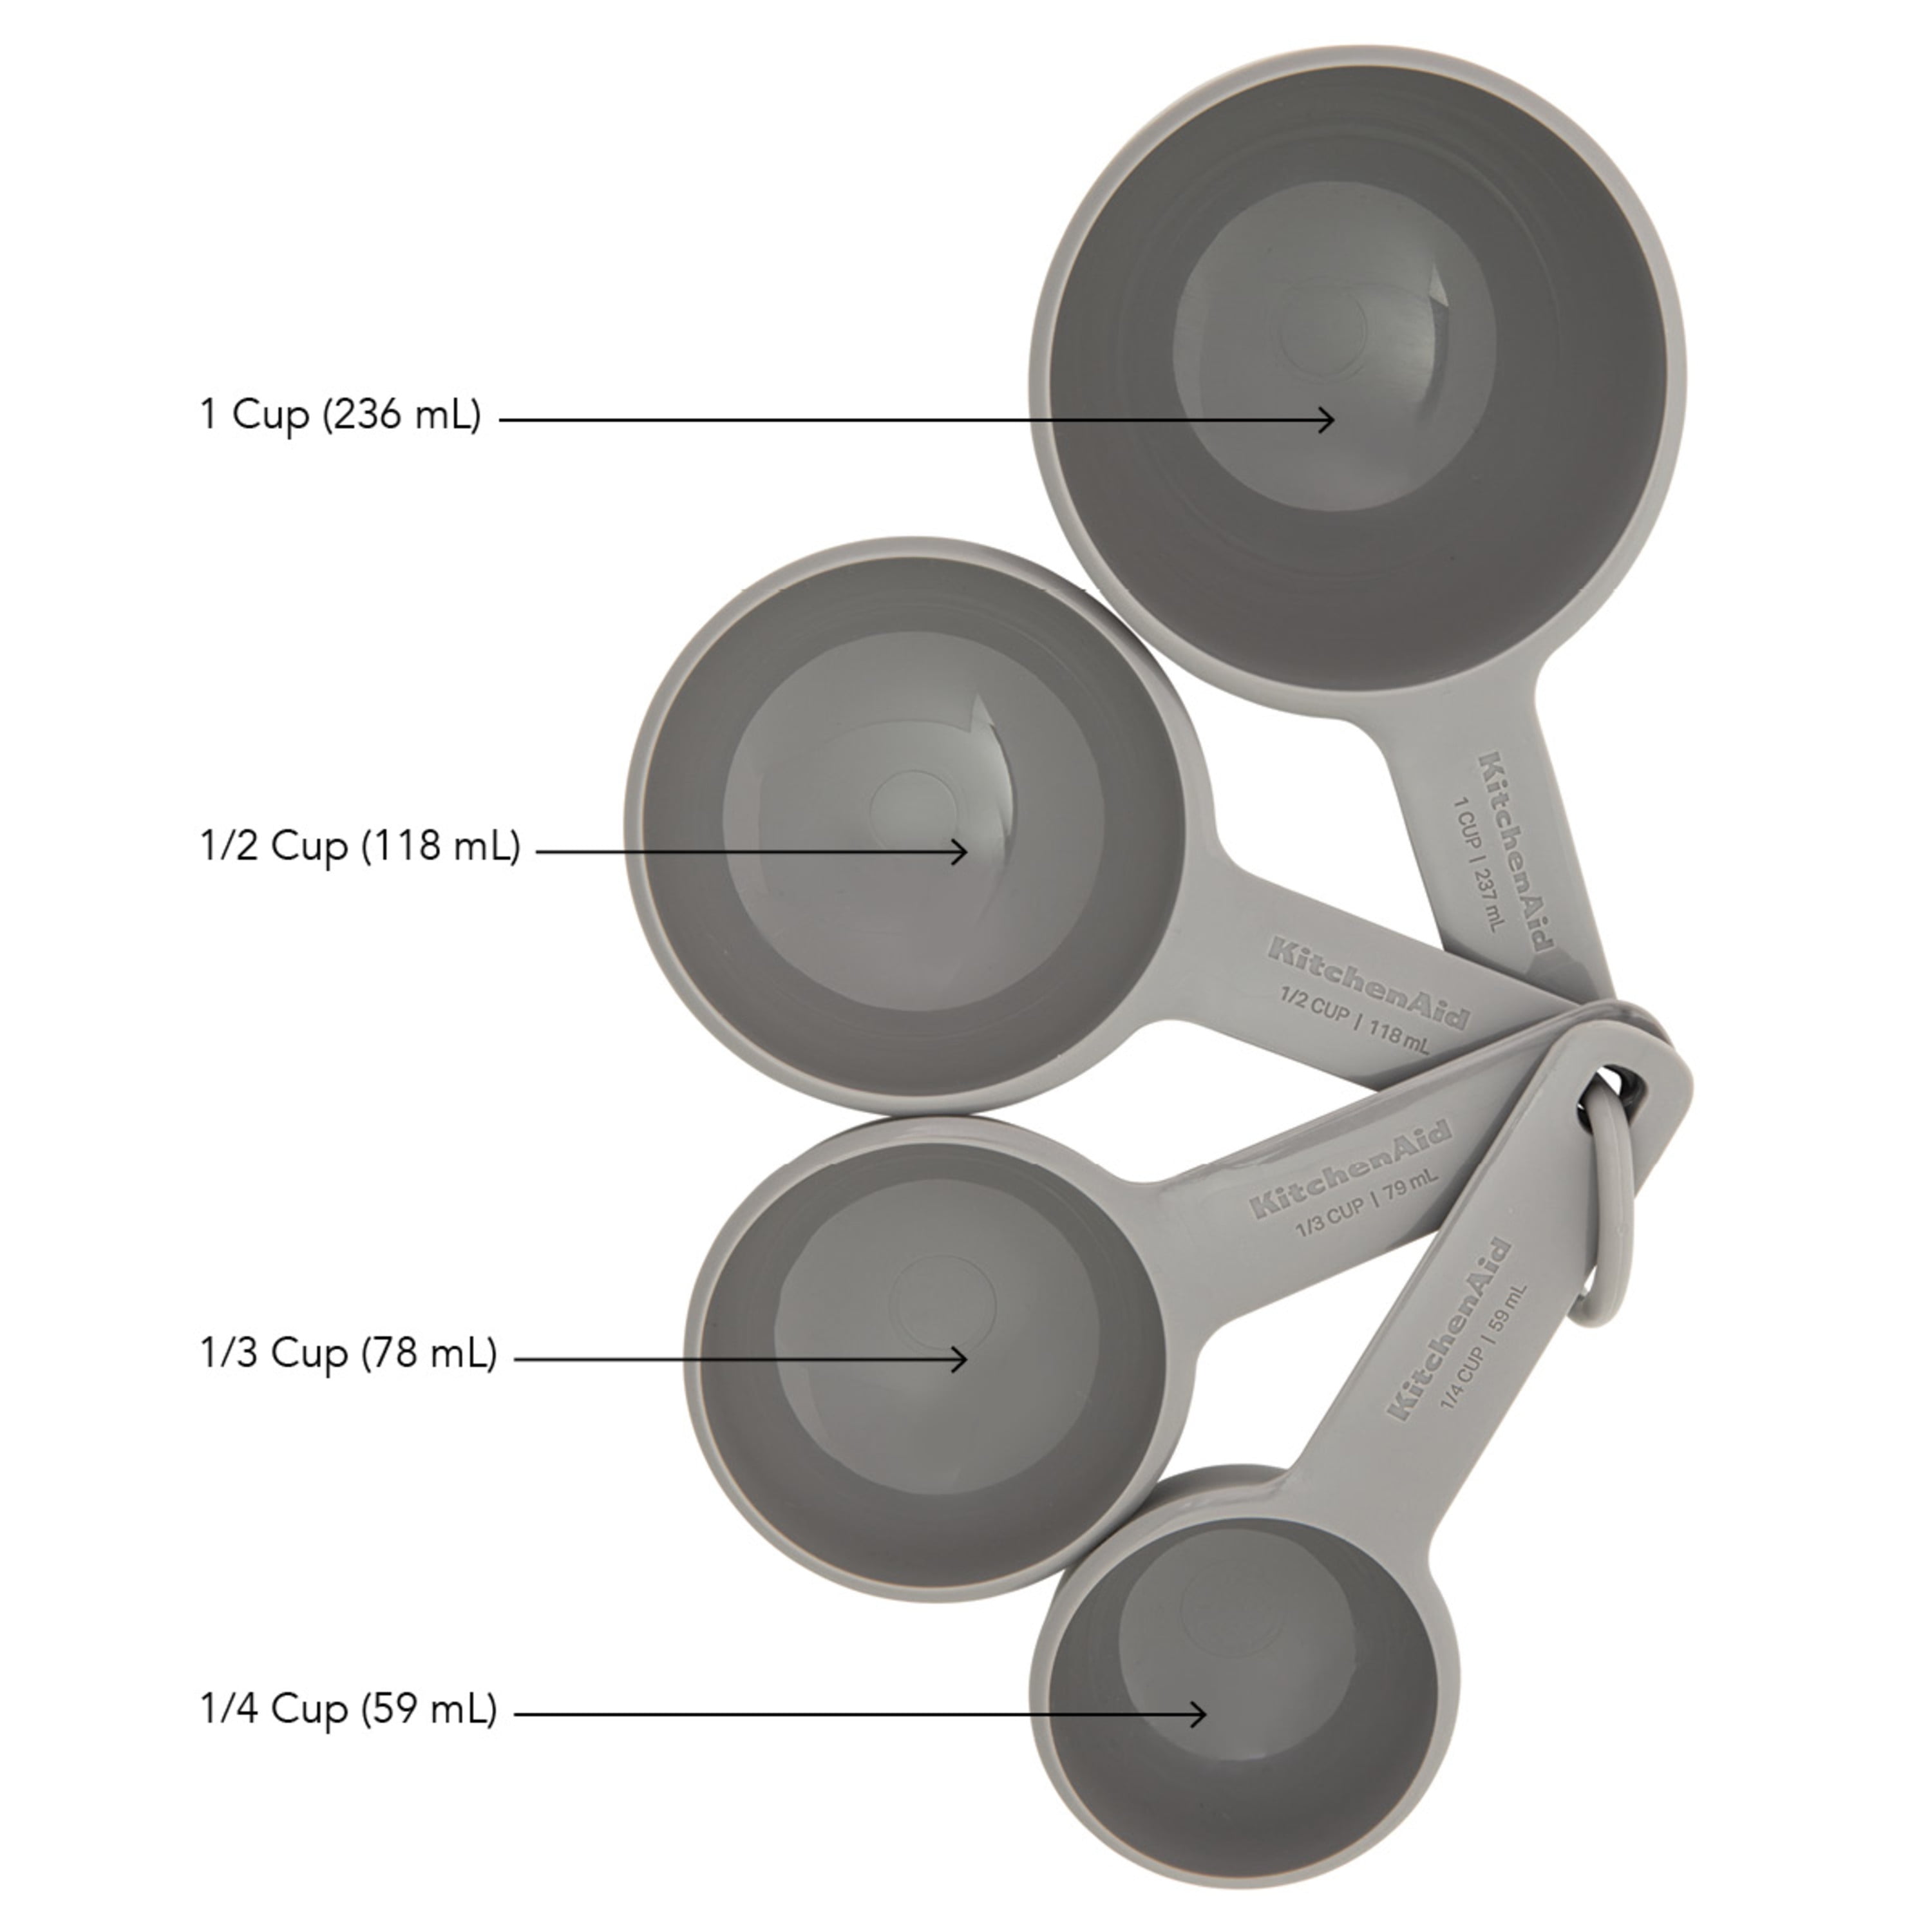 Kitchenaid Universal Measure Cups Spoons Set, Measuring Tools